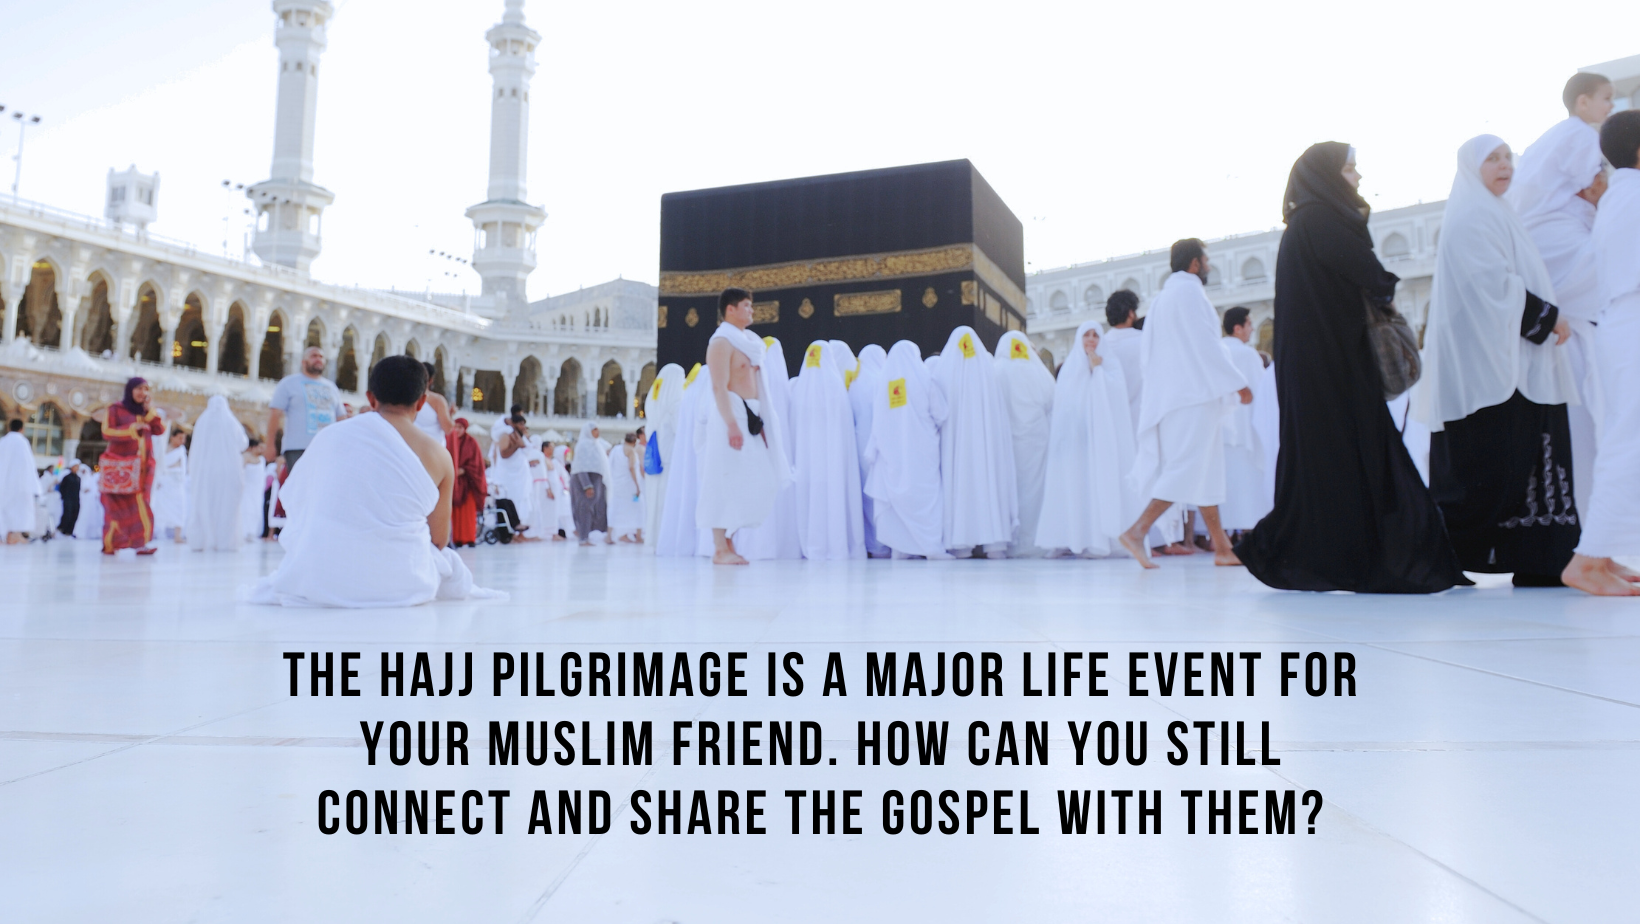 Blog title image - hajj pilgrimage image